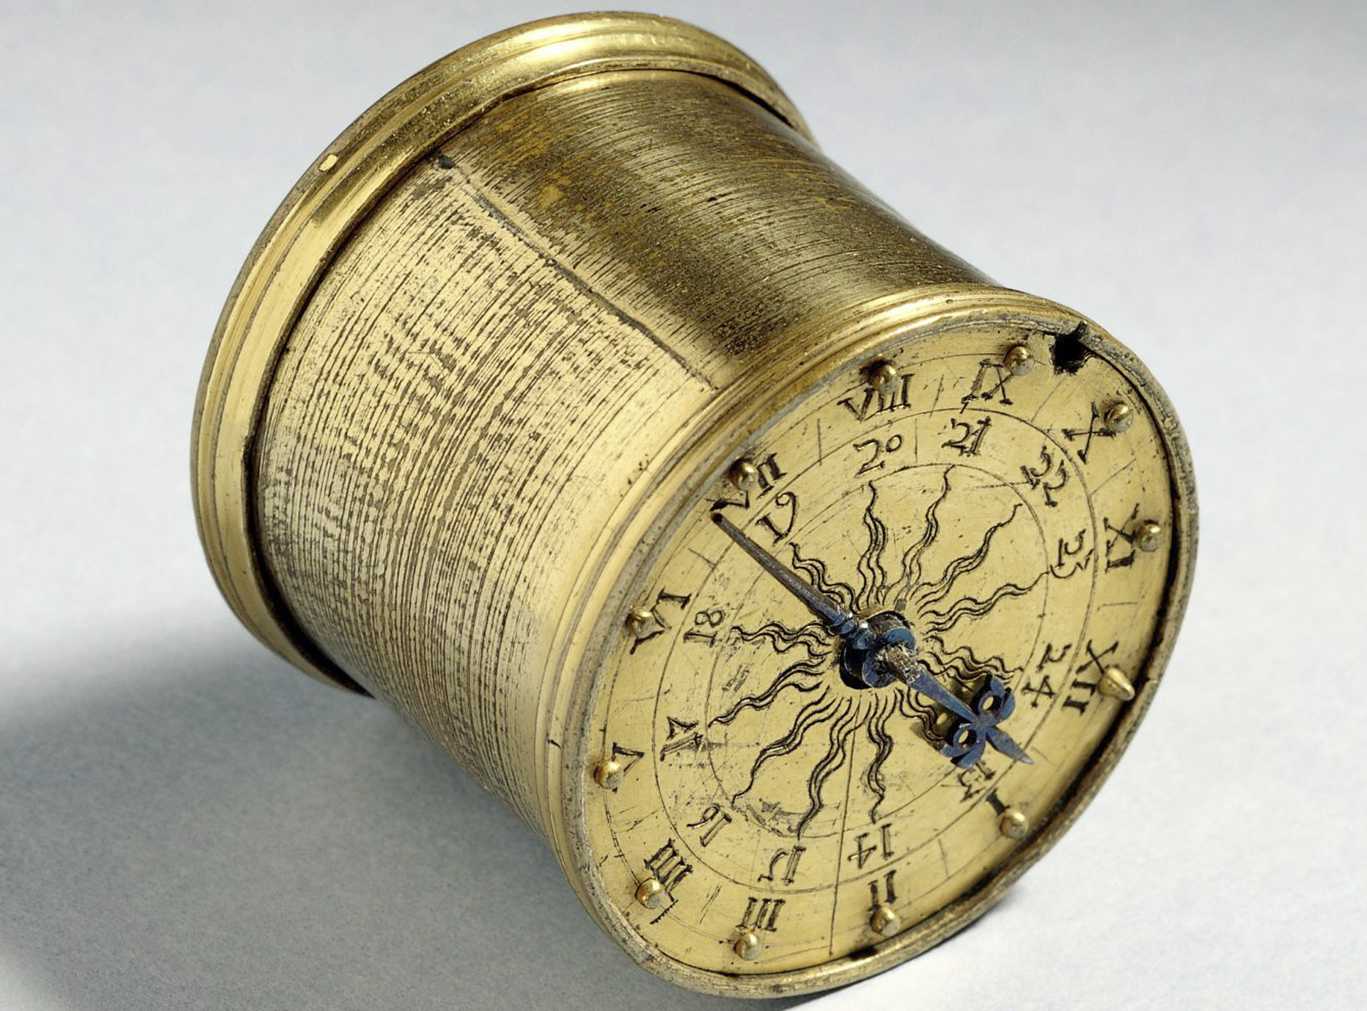 Die Abbildung zeigt die Henlein-Uhr, eine Dosenuhr die zwischen 1530 und 1580 gefertigt wurde. Einige Bauteile wurden bis ins 19. Jahrhundert ergänzt. Die Fotoaufnahme stammt vom Germanischen Nationalmuseum.